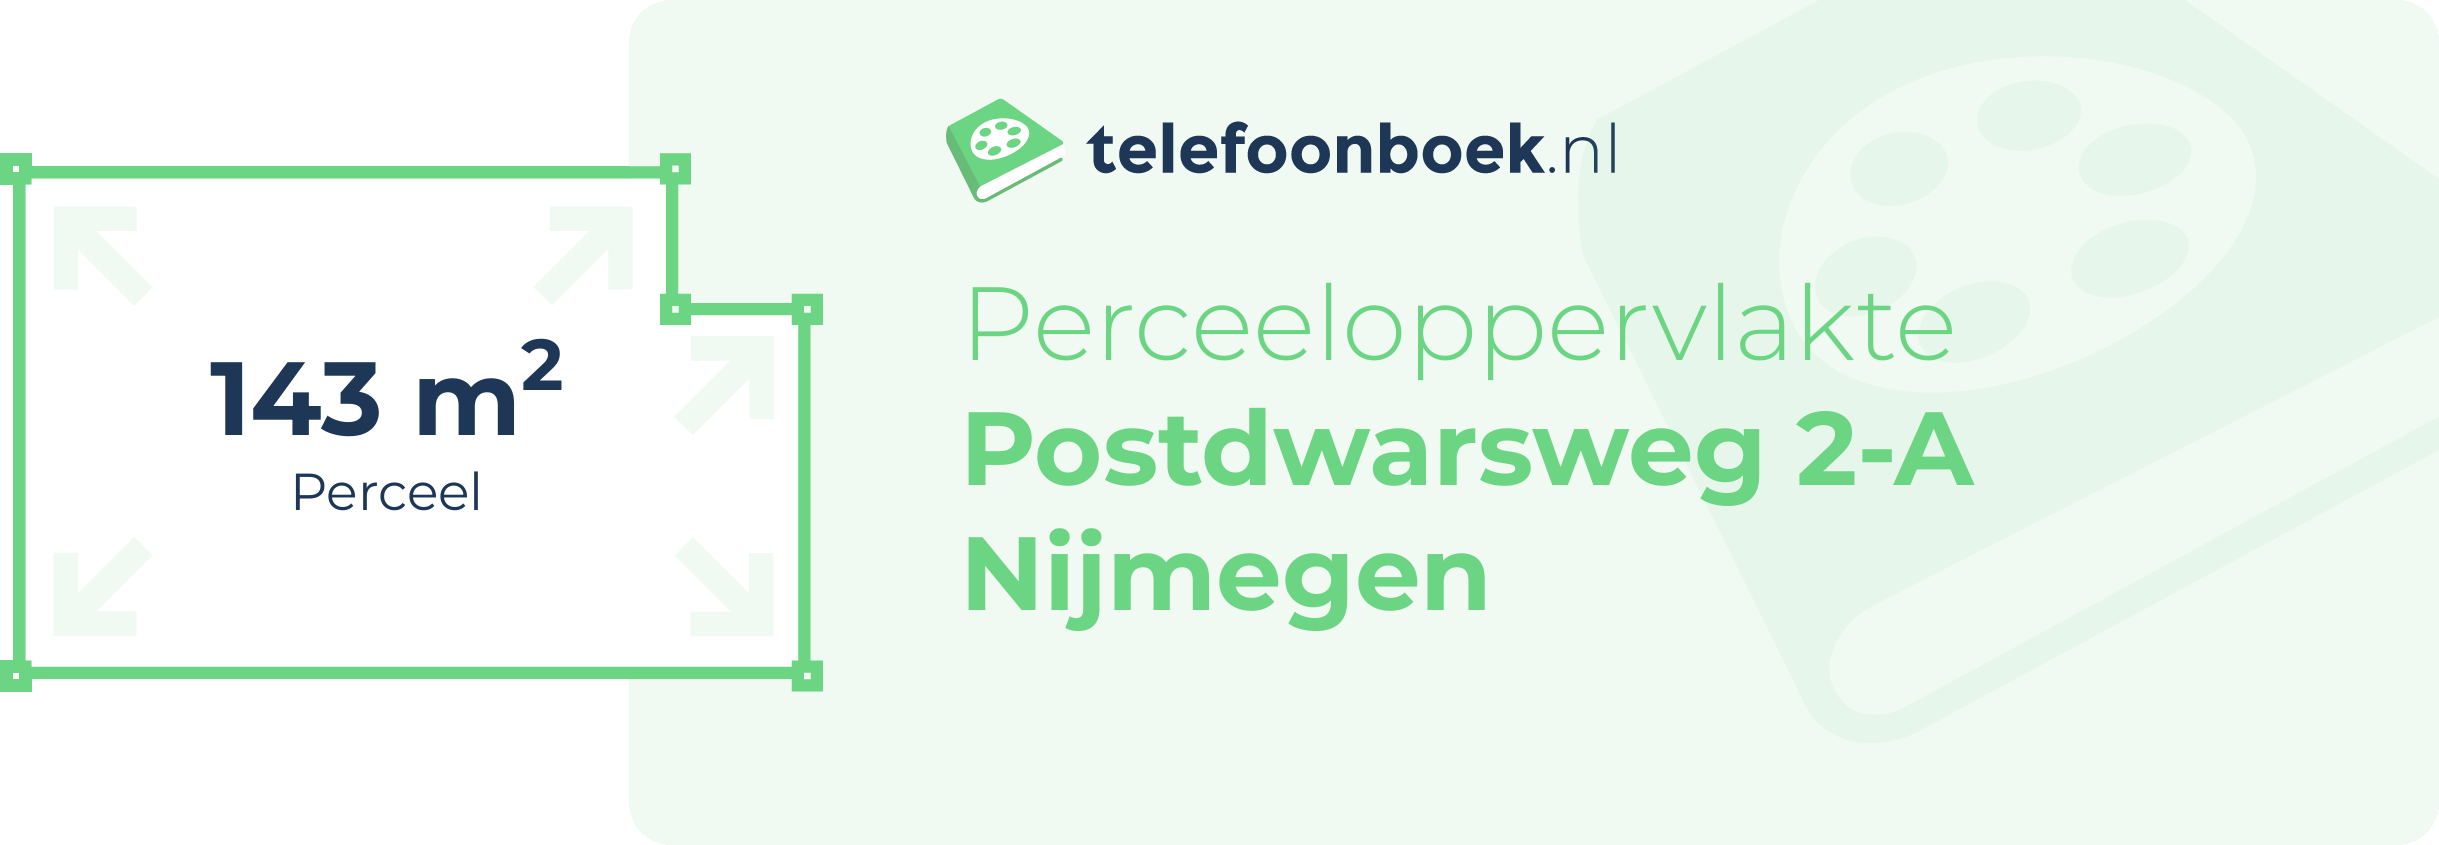 Perceeloppervlakte Postdwarsweg 2-A Nijmegen